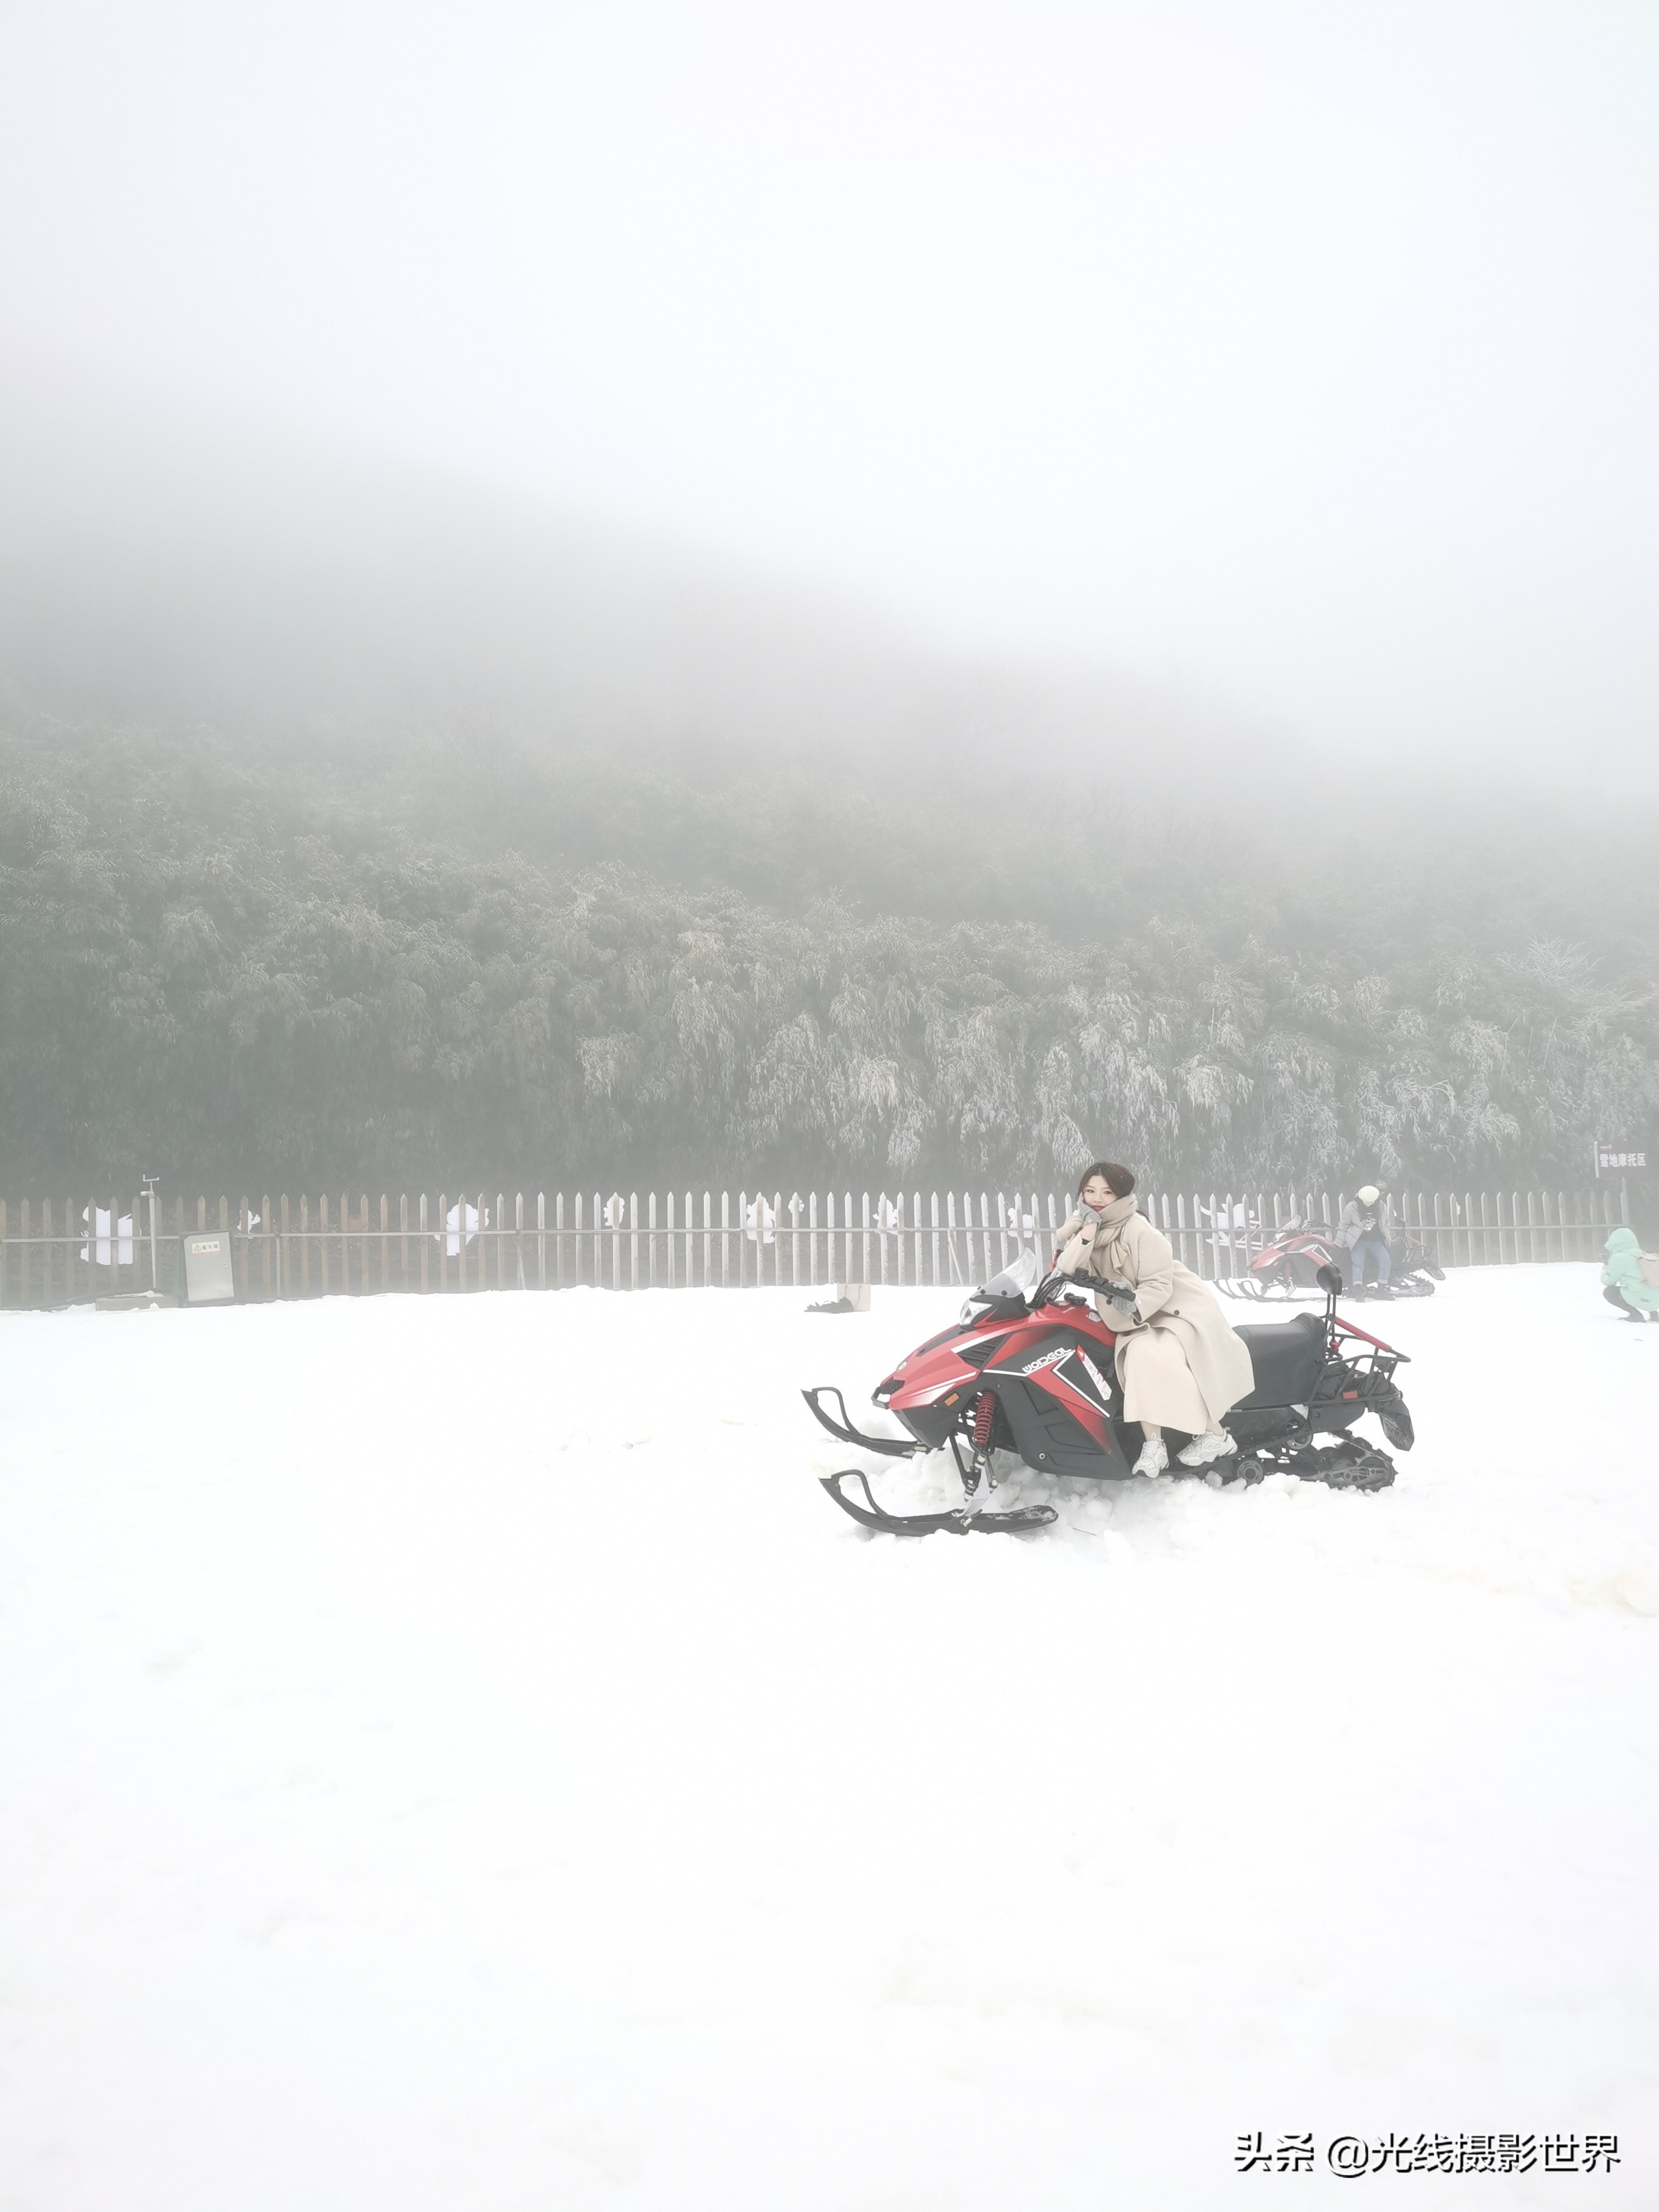 下雪啦！南川金佛山下雪啦！到高山滑雪场体验速度与激情吧